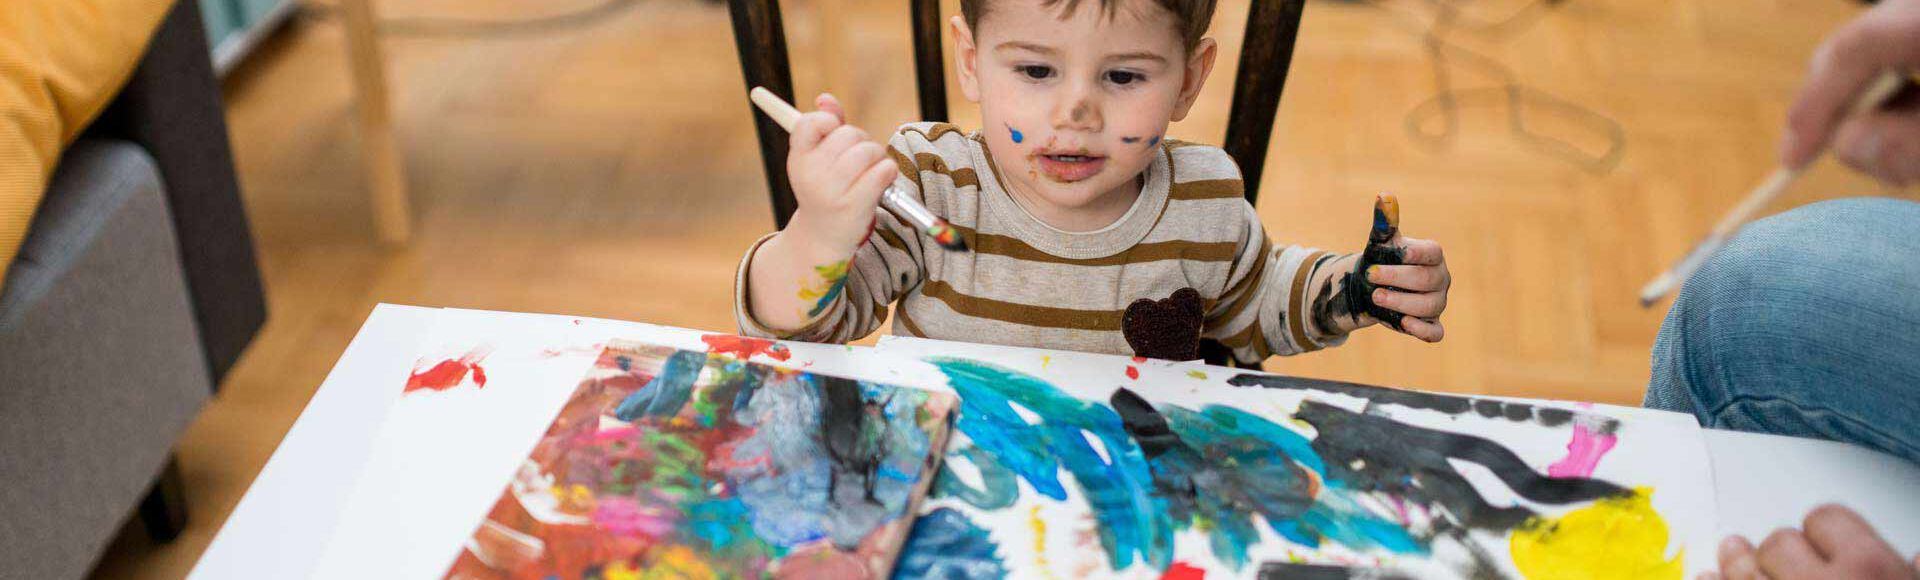 Criança pintando com tinta